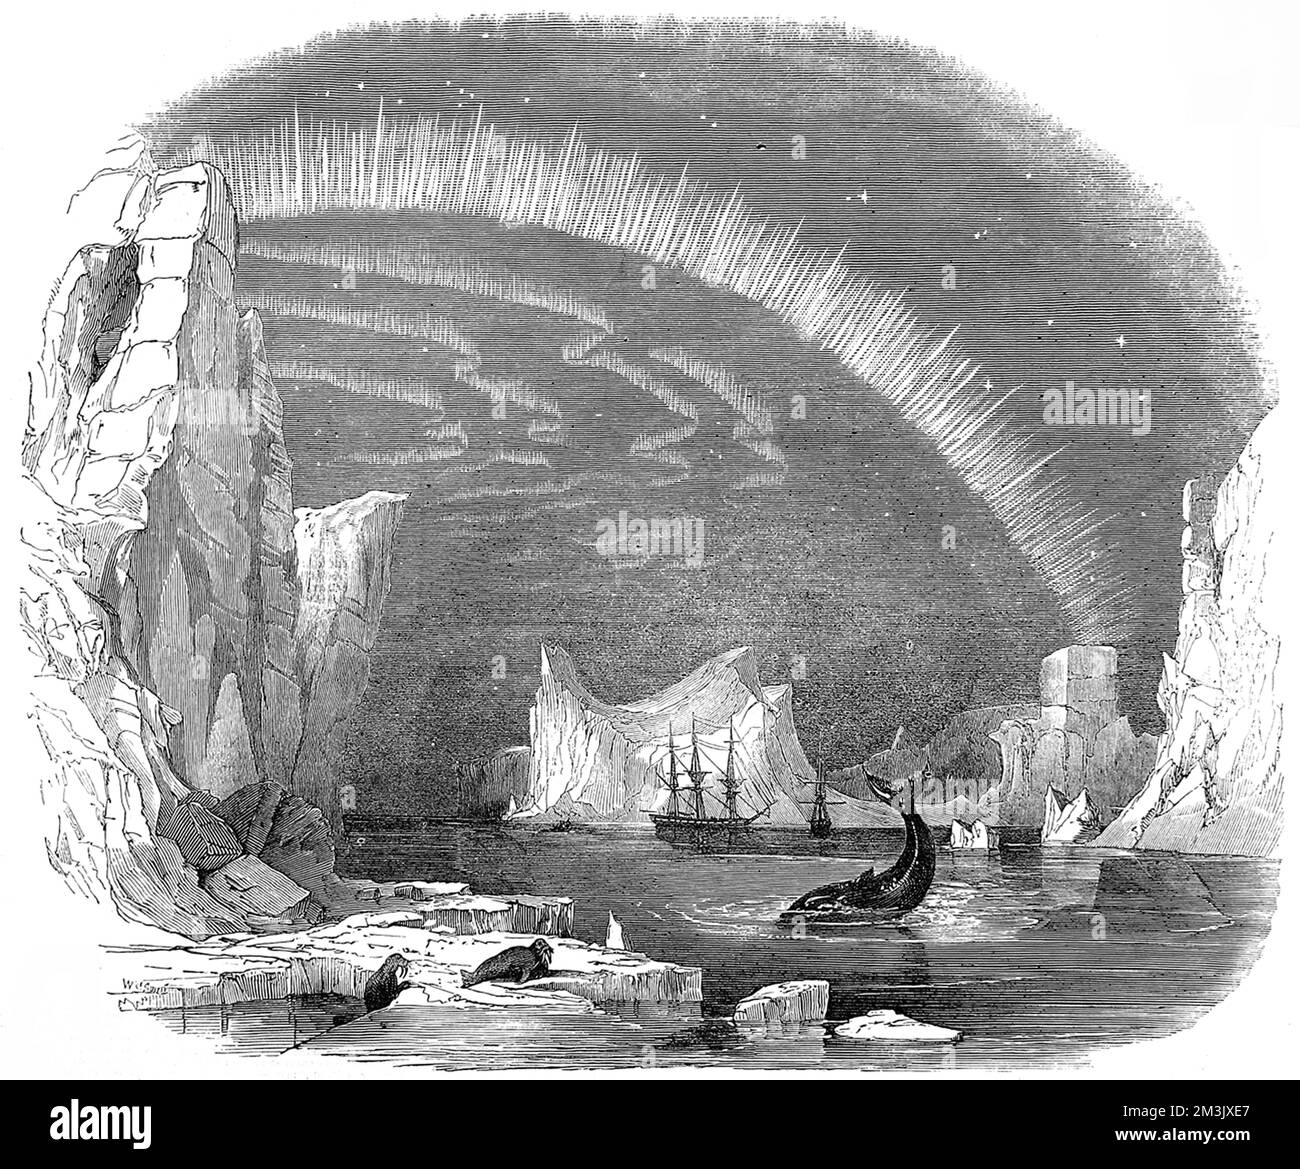 Scène imaginaire montrant une expédition britannique dans l'Arctique, vers 1849. La gravure montre deux navires en arrière-plan, avec des icebergs, des morses, une baleine et l'aurore boréale également visible. Cette image a été créée afin de donner aux lecteurs de l'« Illustrated London News » une idée des conditions que les expéditions de Franklin et Ross des années 1840 pourraient rencontrer dans l'Arctique. Banque D'Images